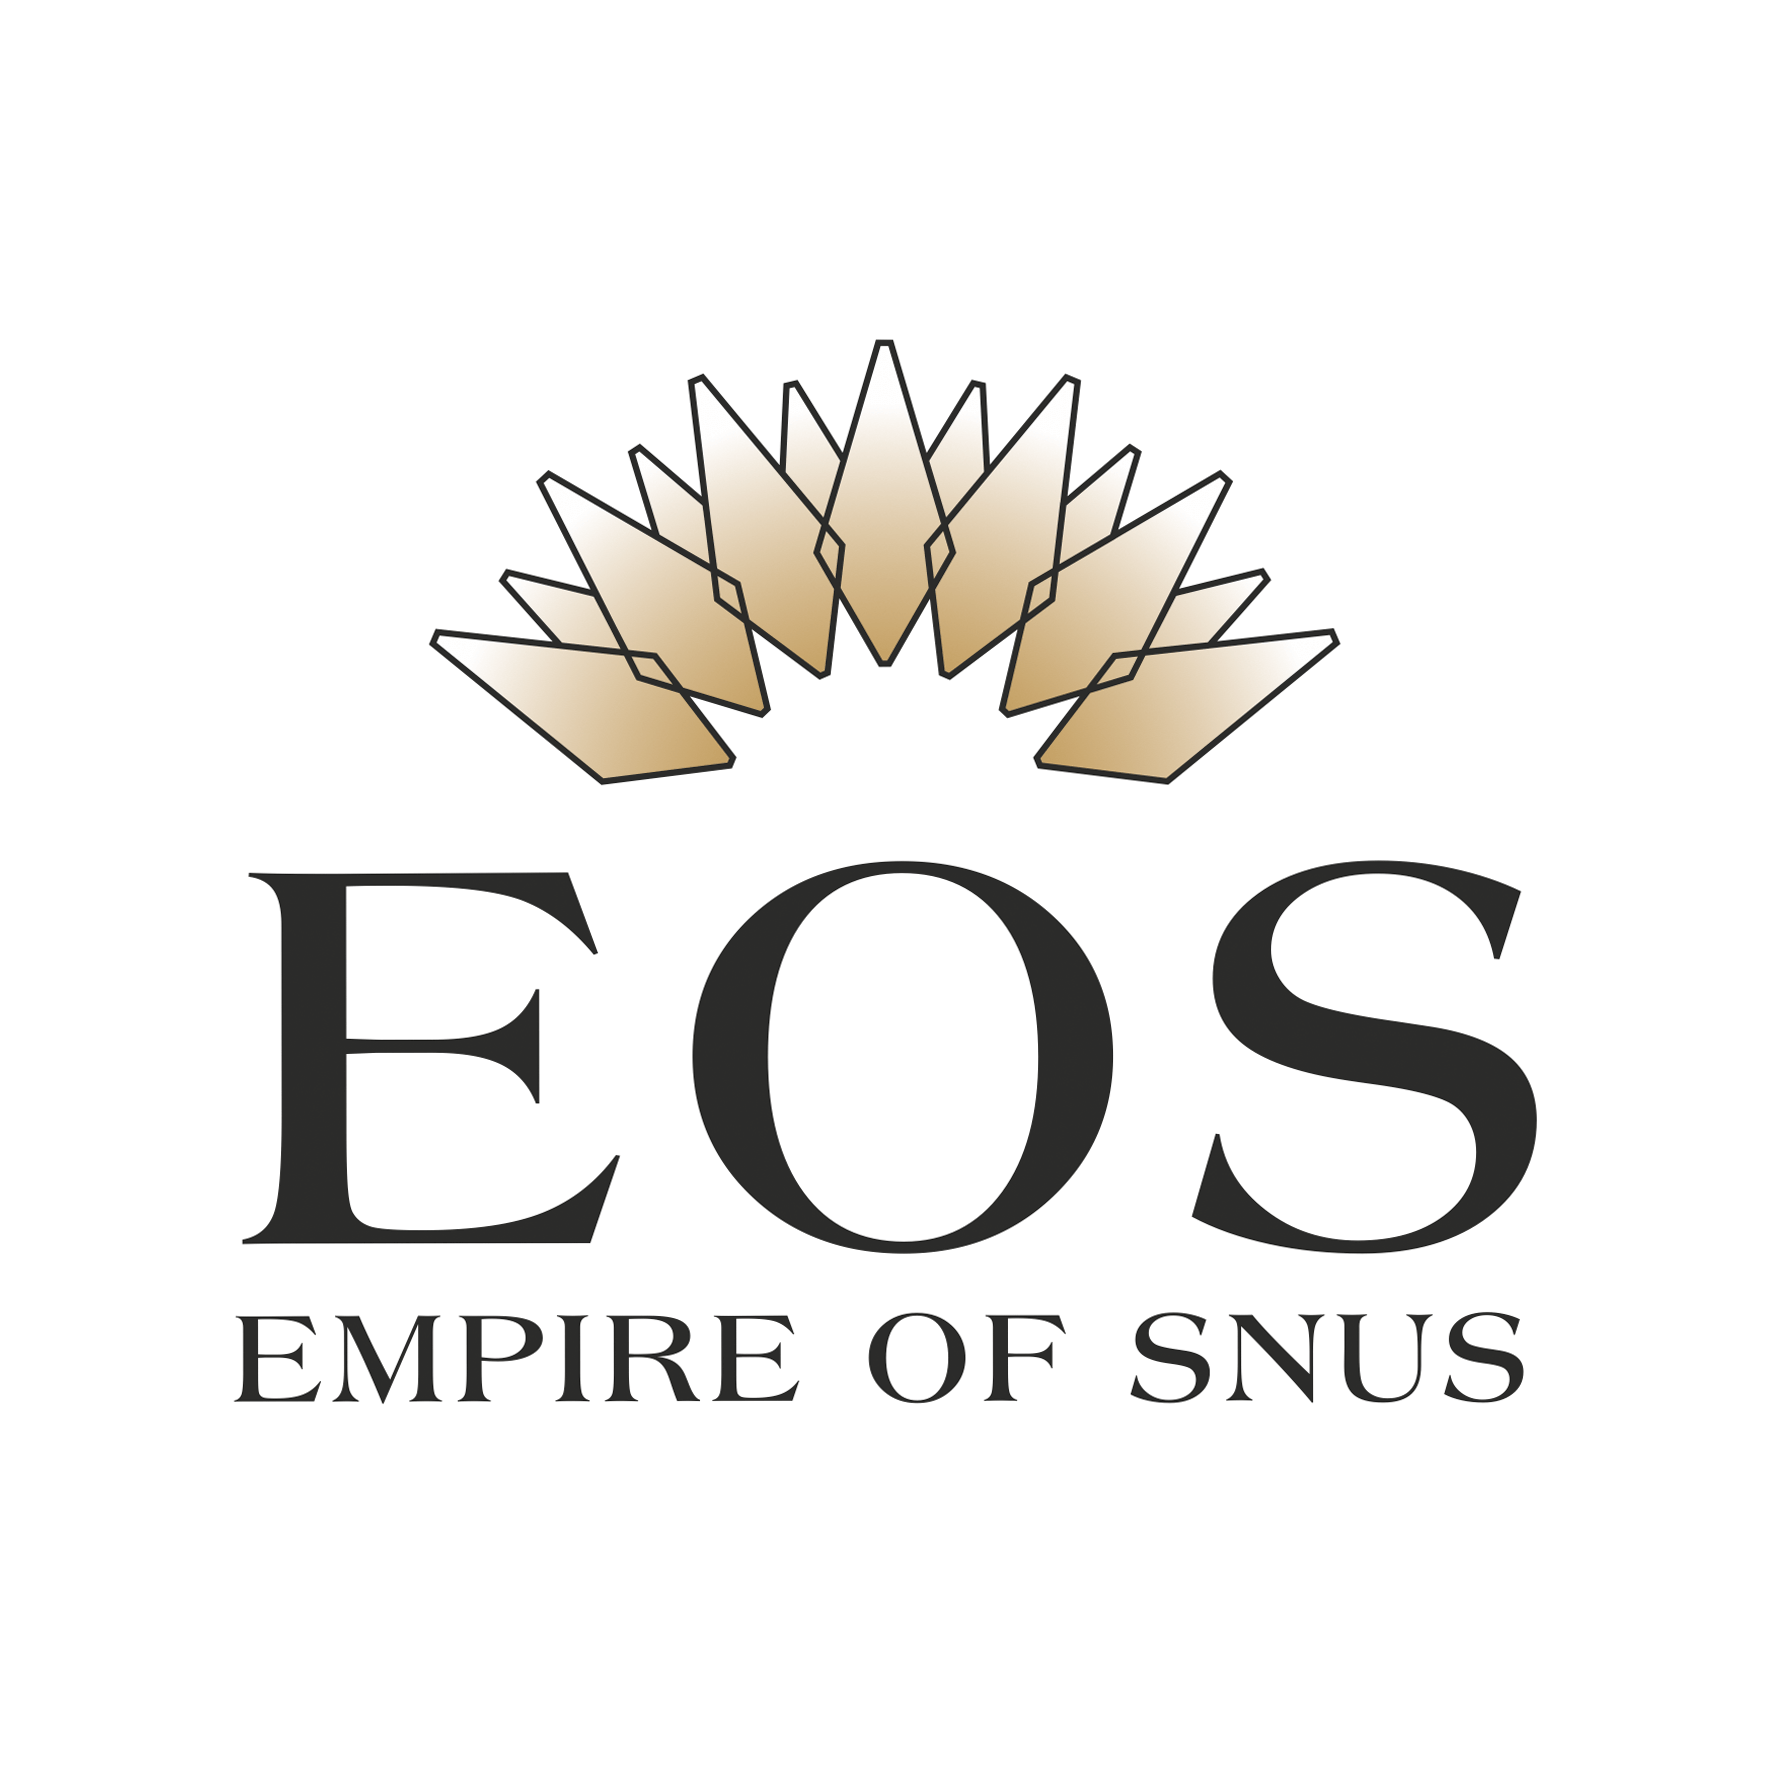 Empire of Snus